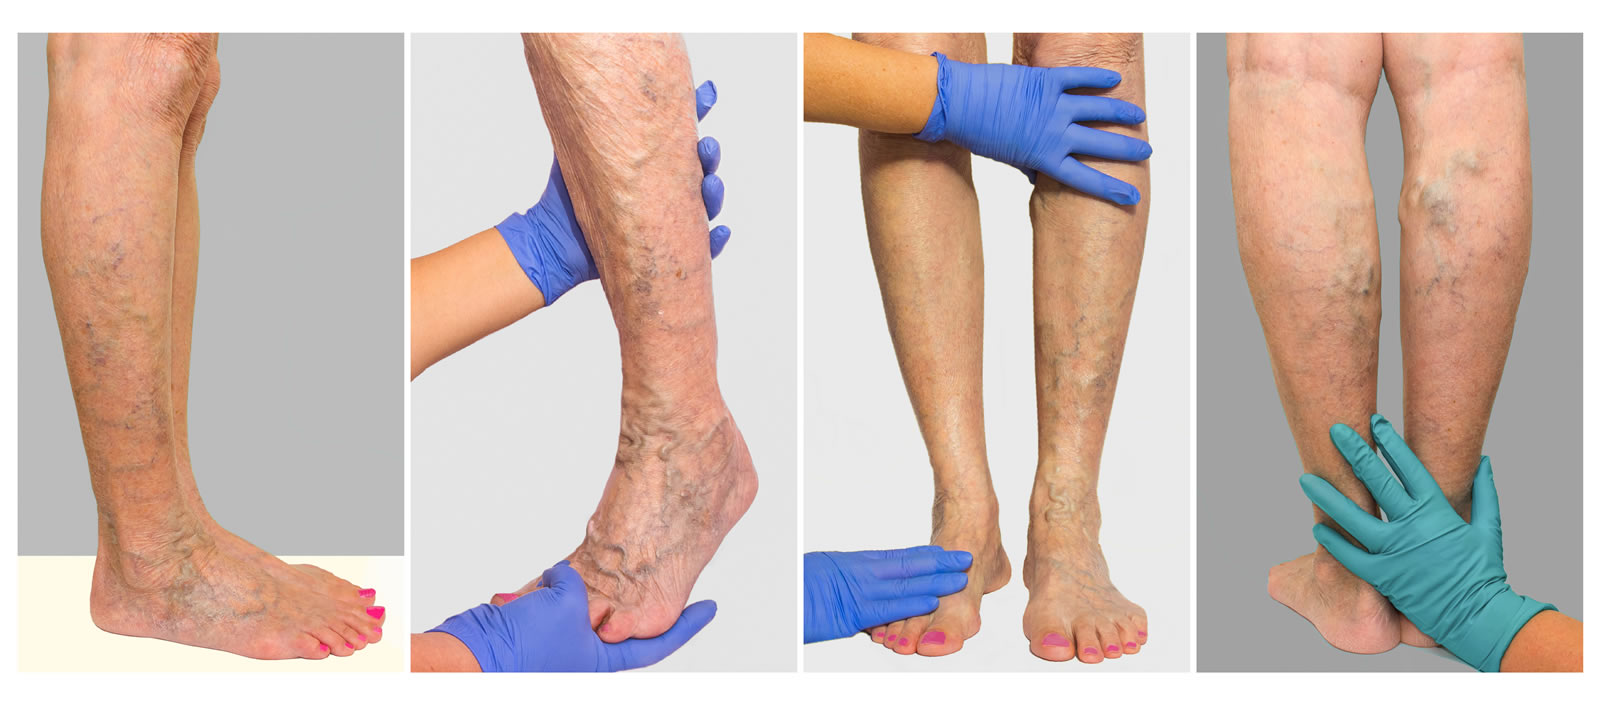 Vier Bilder von Beinen mit Krampfadern, die von behandschuhten Händen untersucht werden.